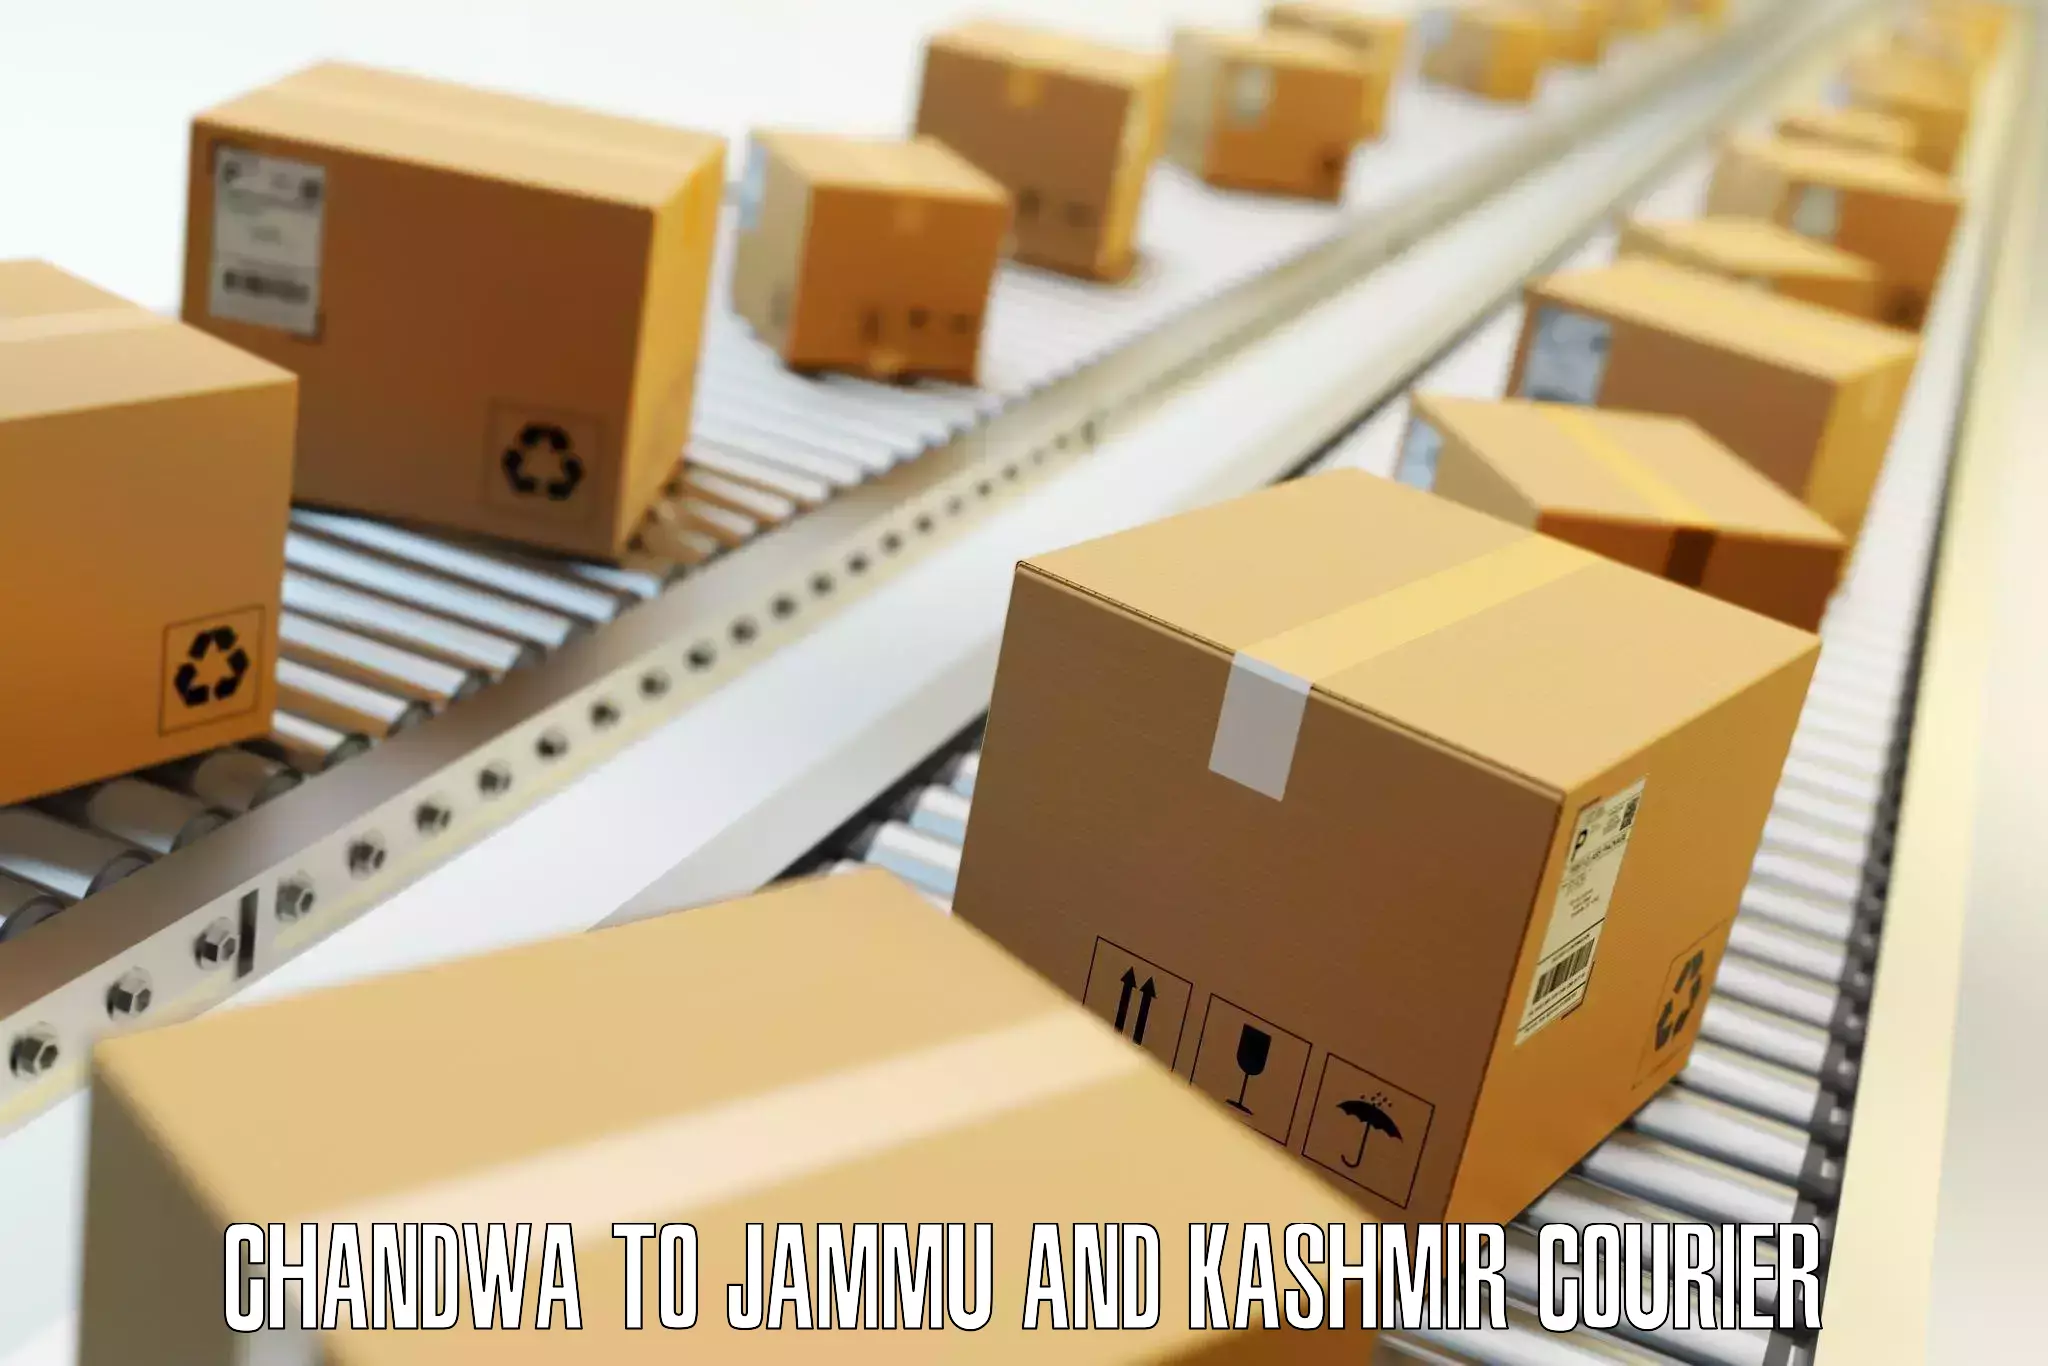 Luggage shipping service Chandwa to University of Kashmir Srinagar